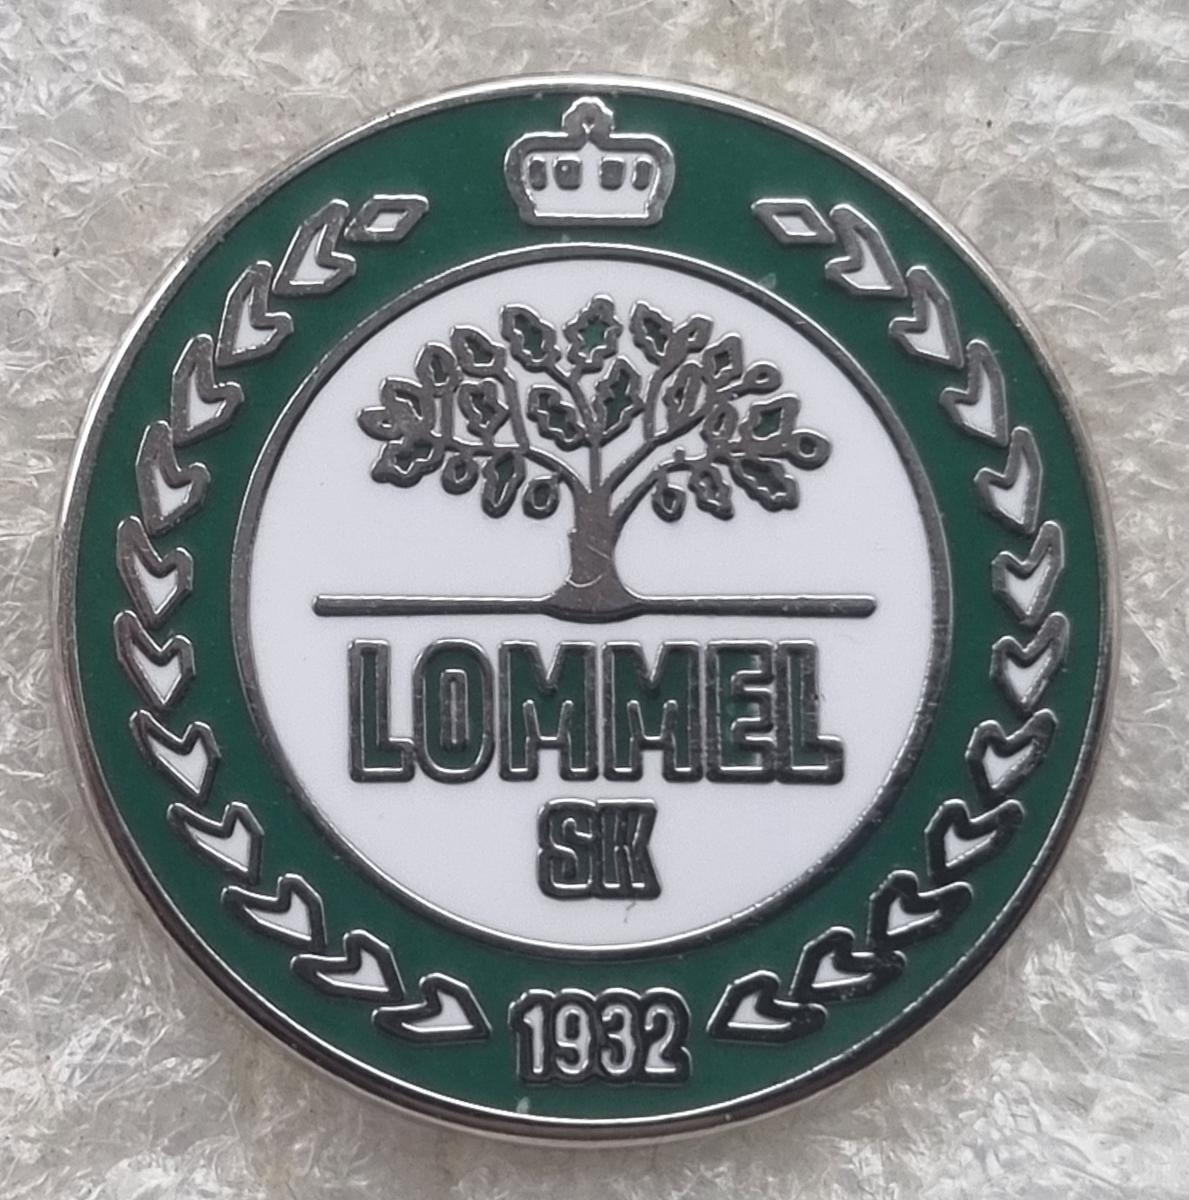 LOMMEL SK, futbal, BELGICKO - Odznaky, nášivky a medaily